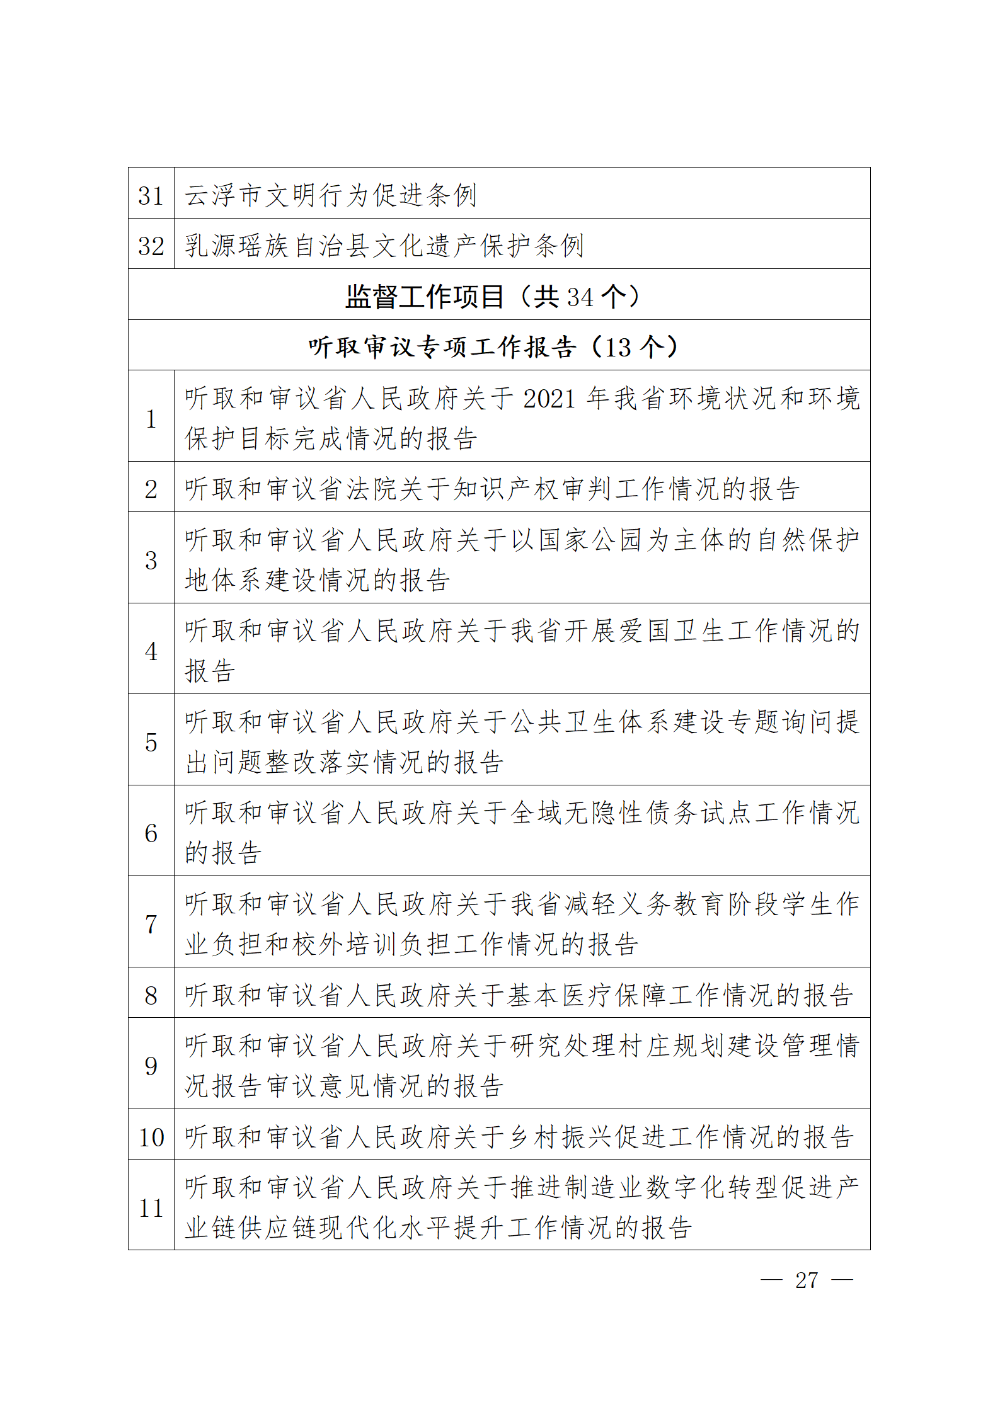 230115-（登报版定稿）广东省人民代表大会常务委员会工作报告_27.png